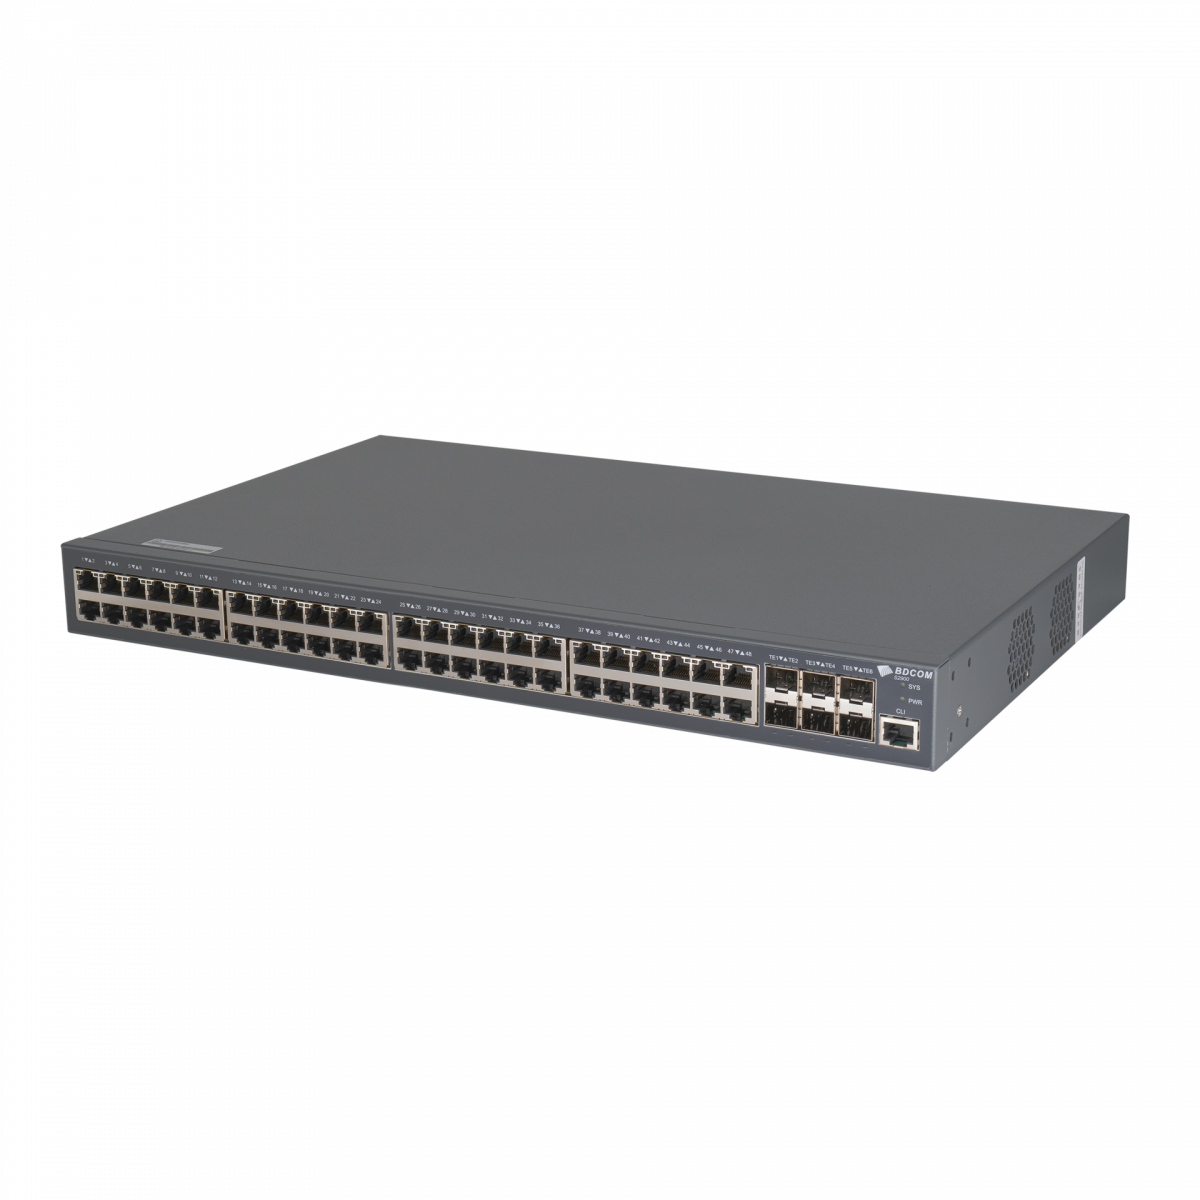 Управляемый PoE коммутатор уровня 3 BDCOM S2900-48P6X, 48x 10/100/1000Base-T PoE 802.3af/at до 740W, 6x 1/10GE SFP+, 220VAC + 44-57VDC